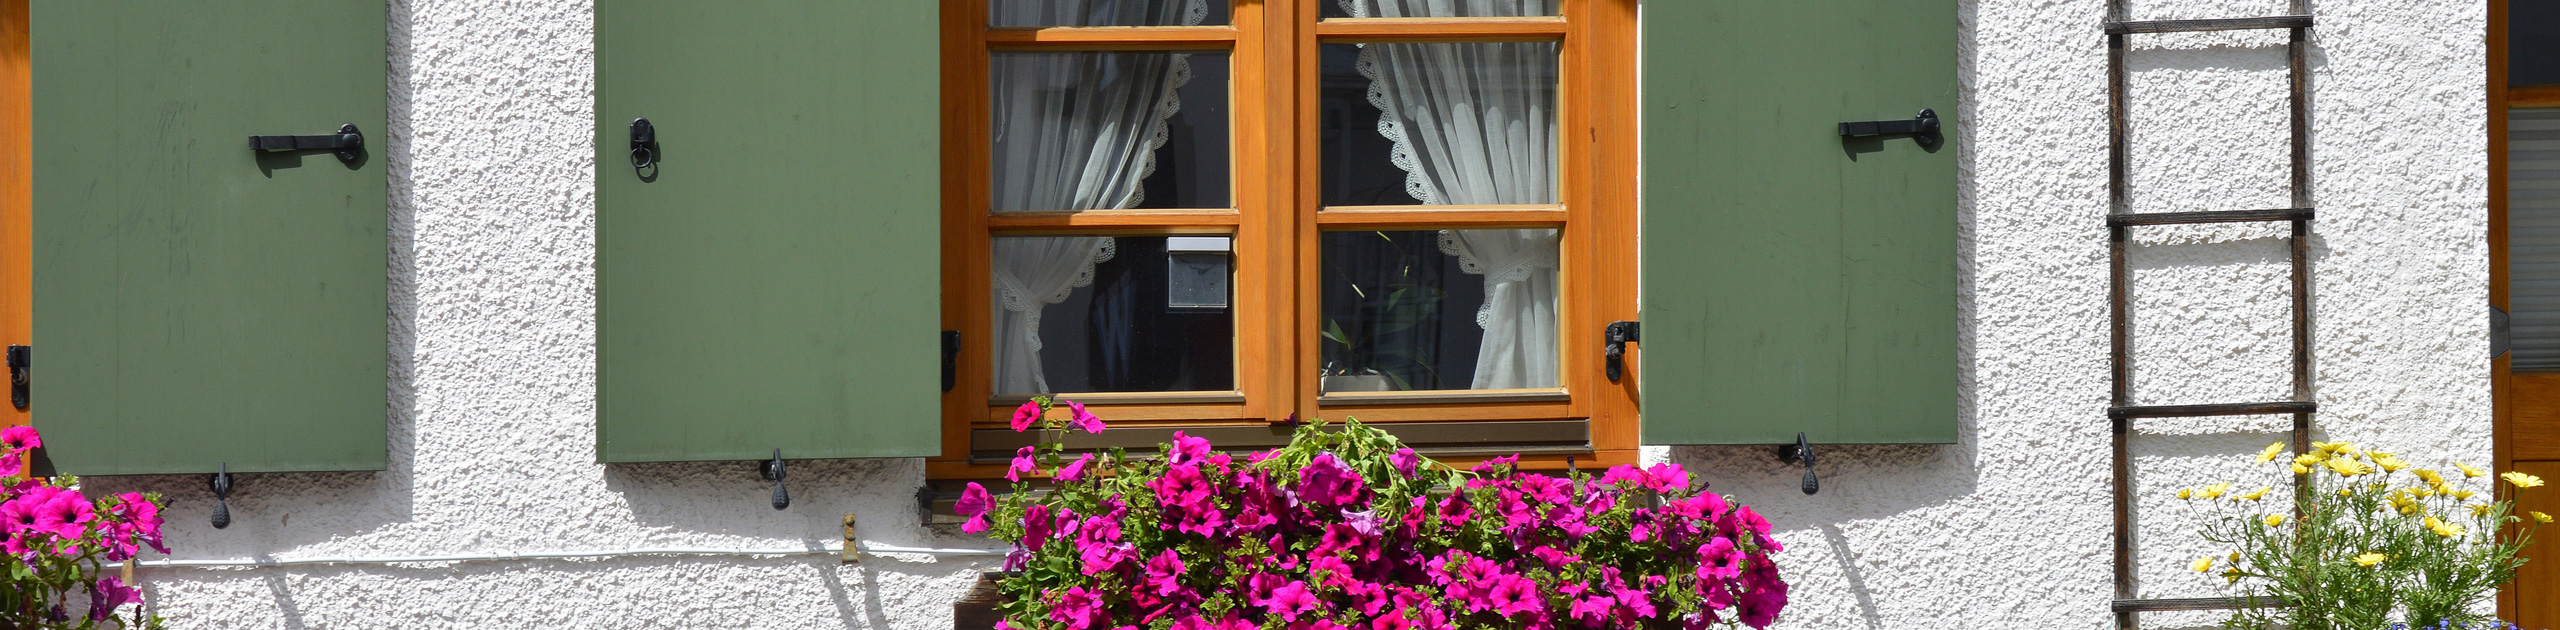 Haus mit Fensterläden und Blumen